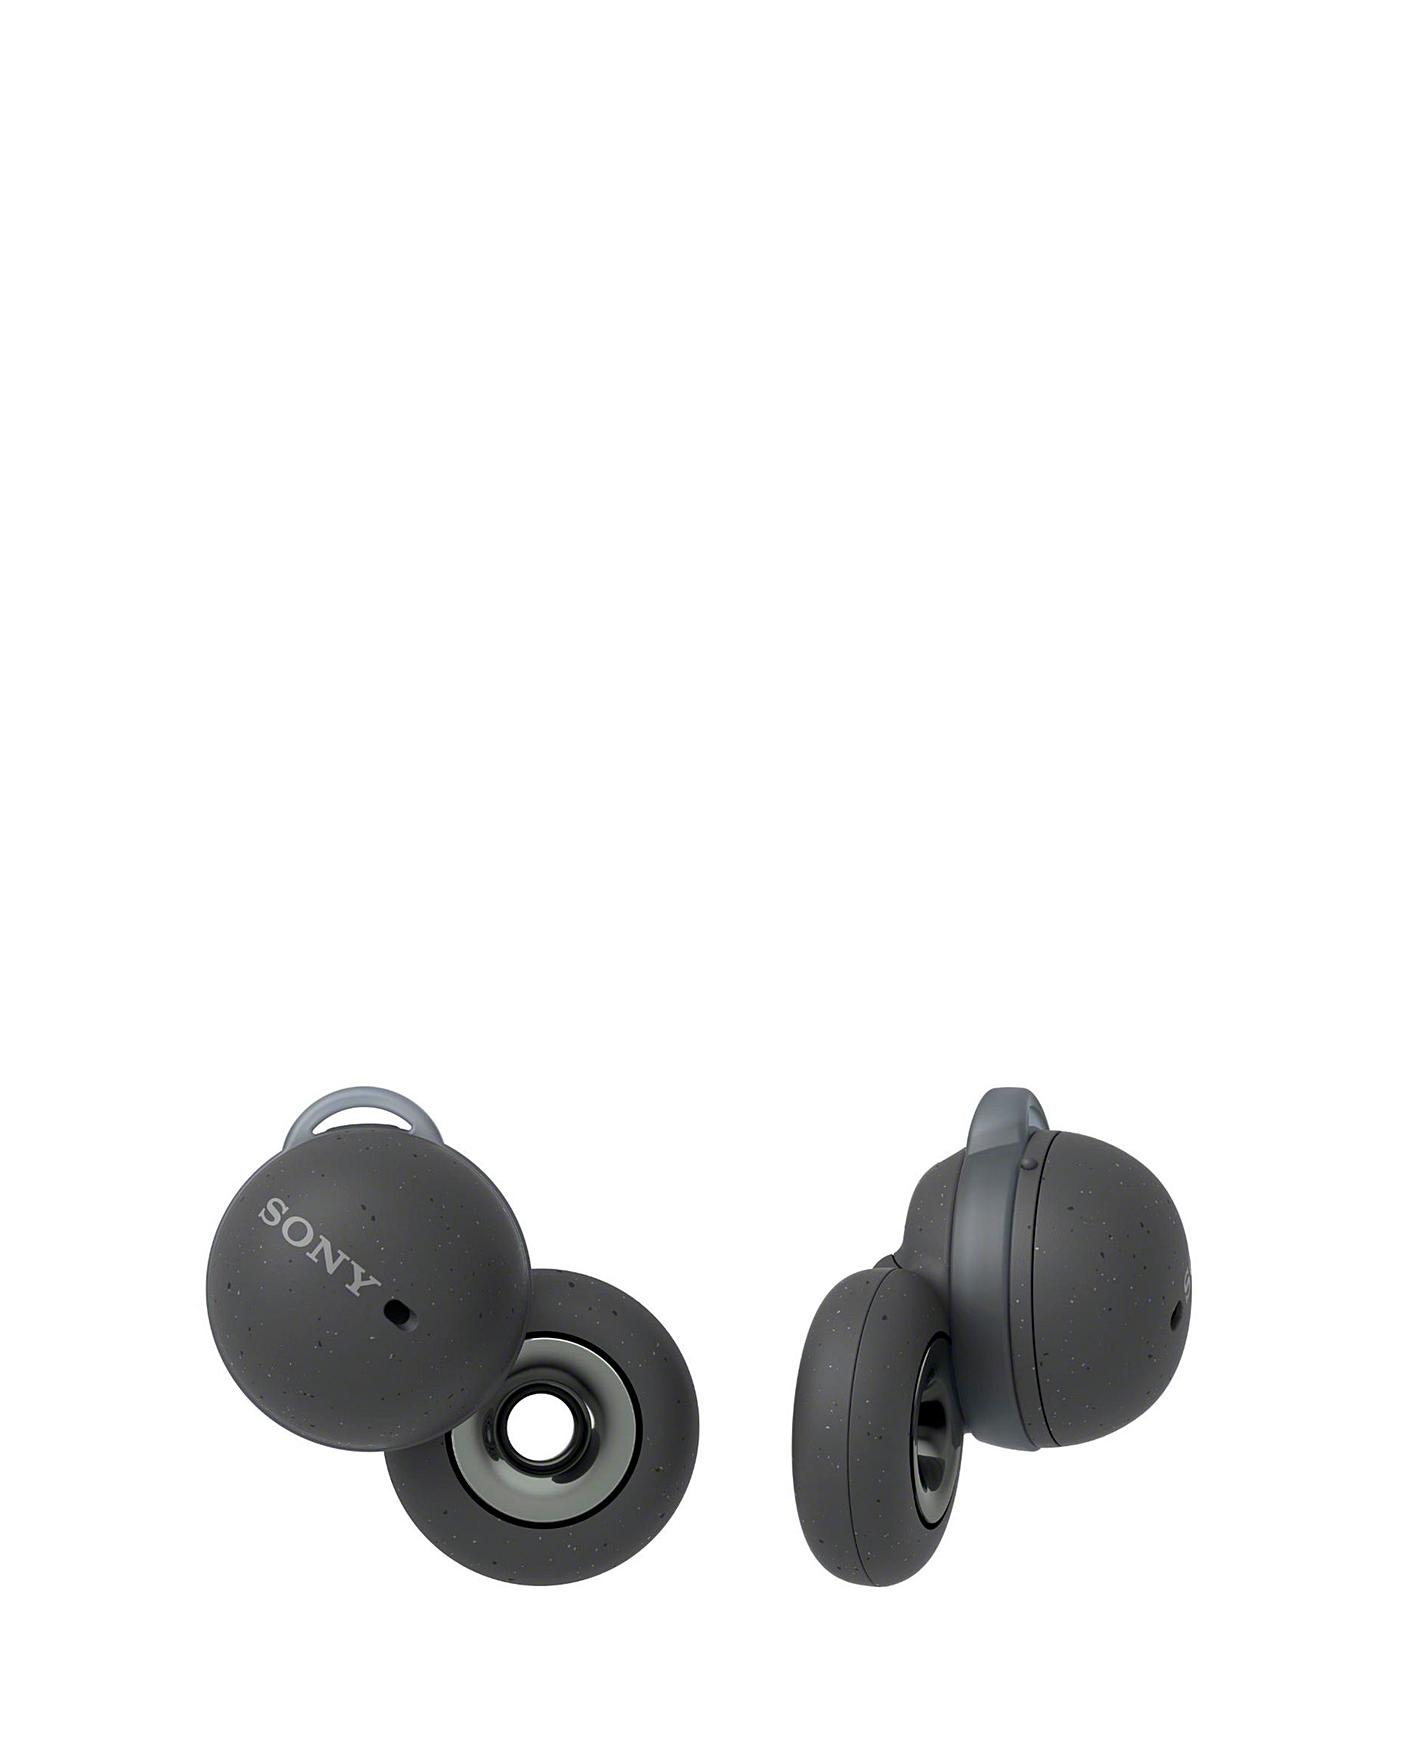 Sony LinkBuds WF-L900 Earbuds - Grey